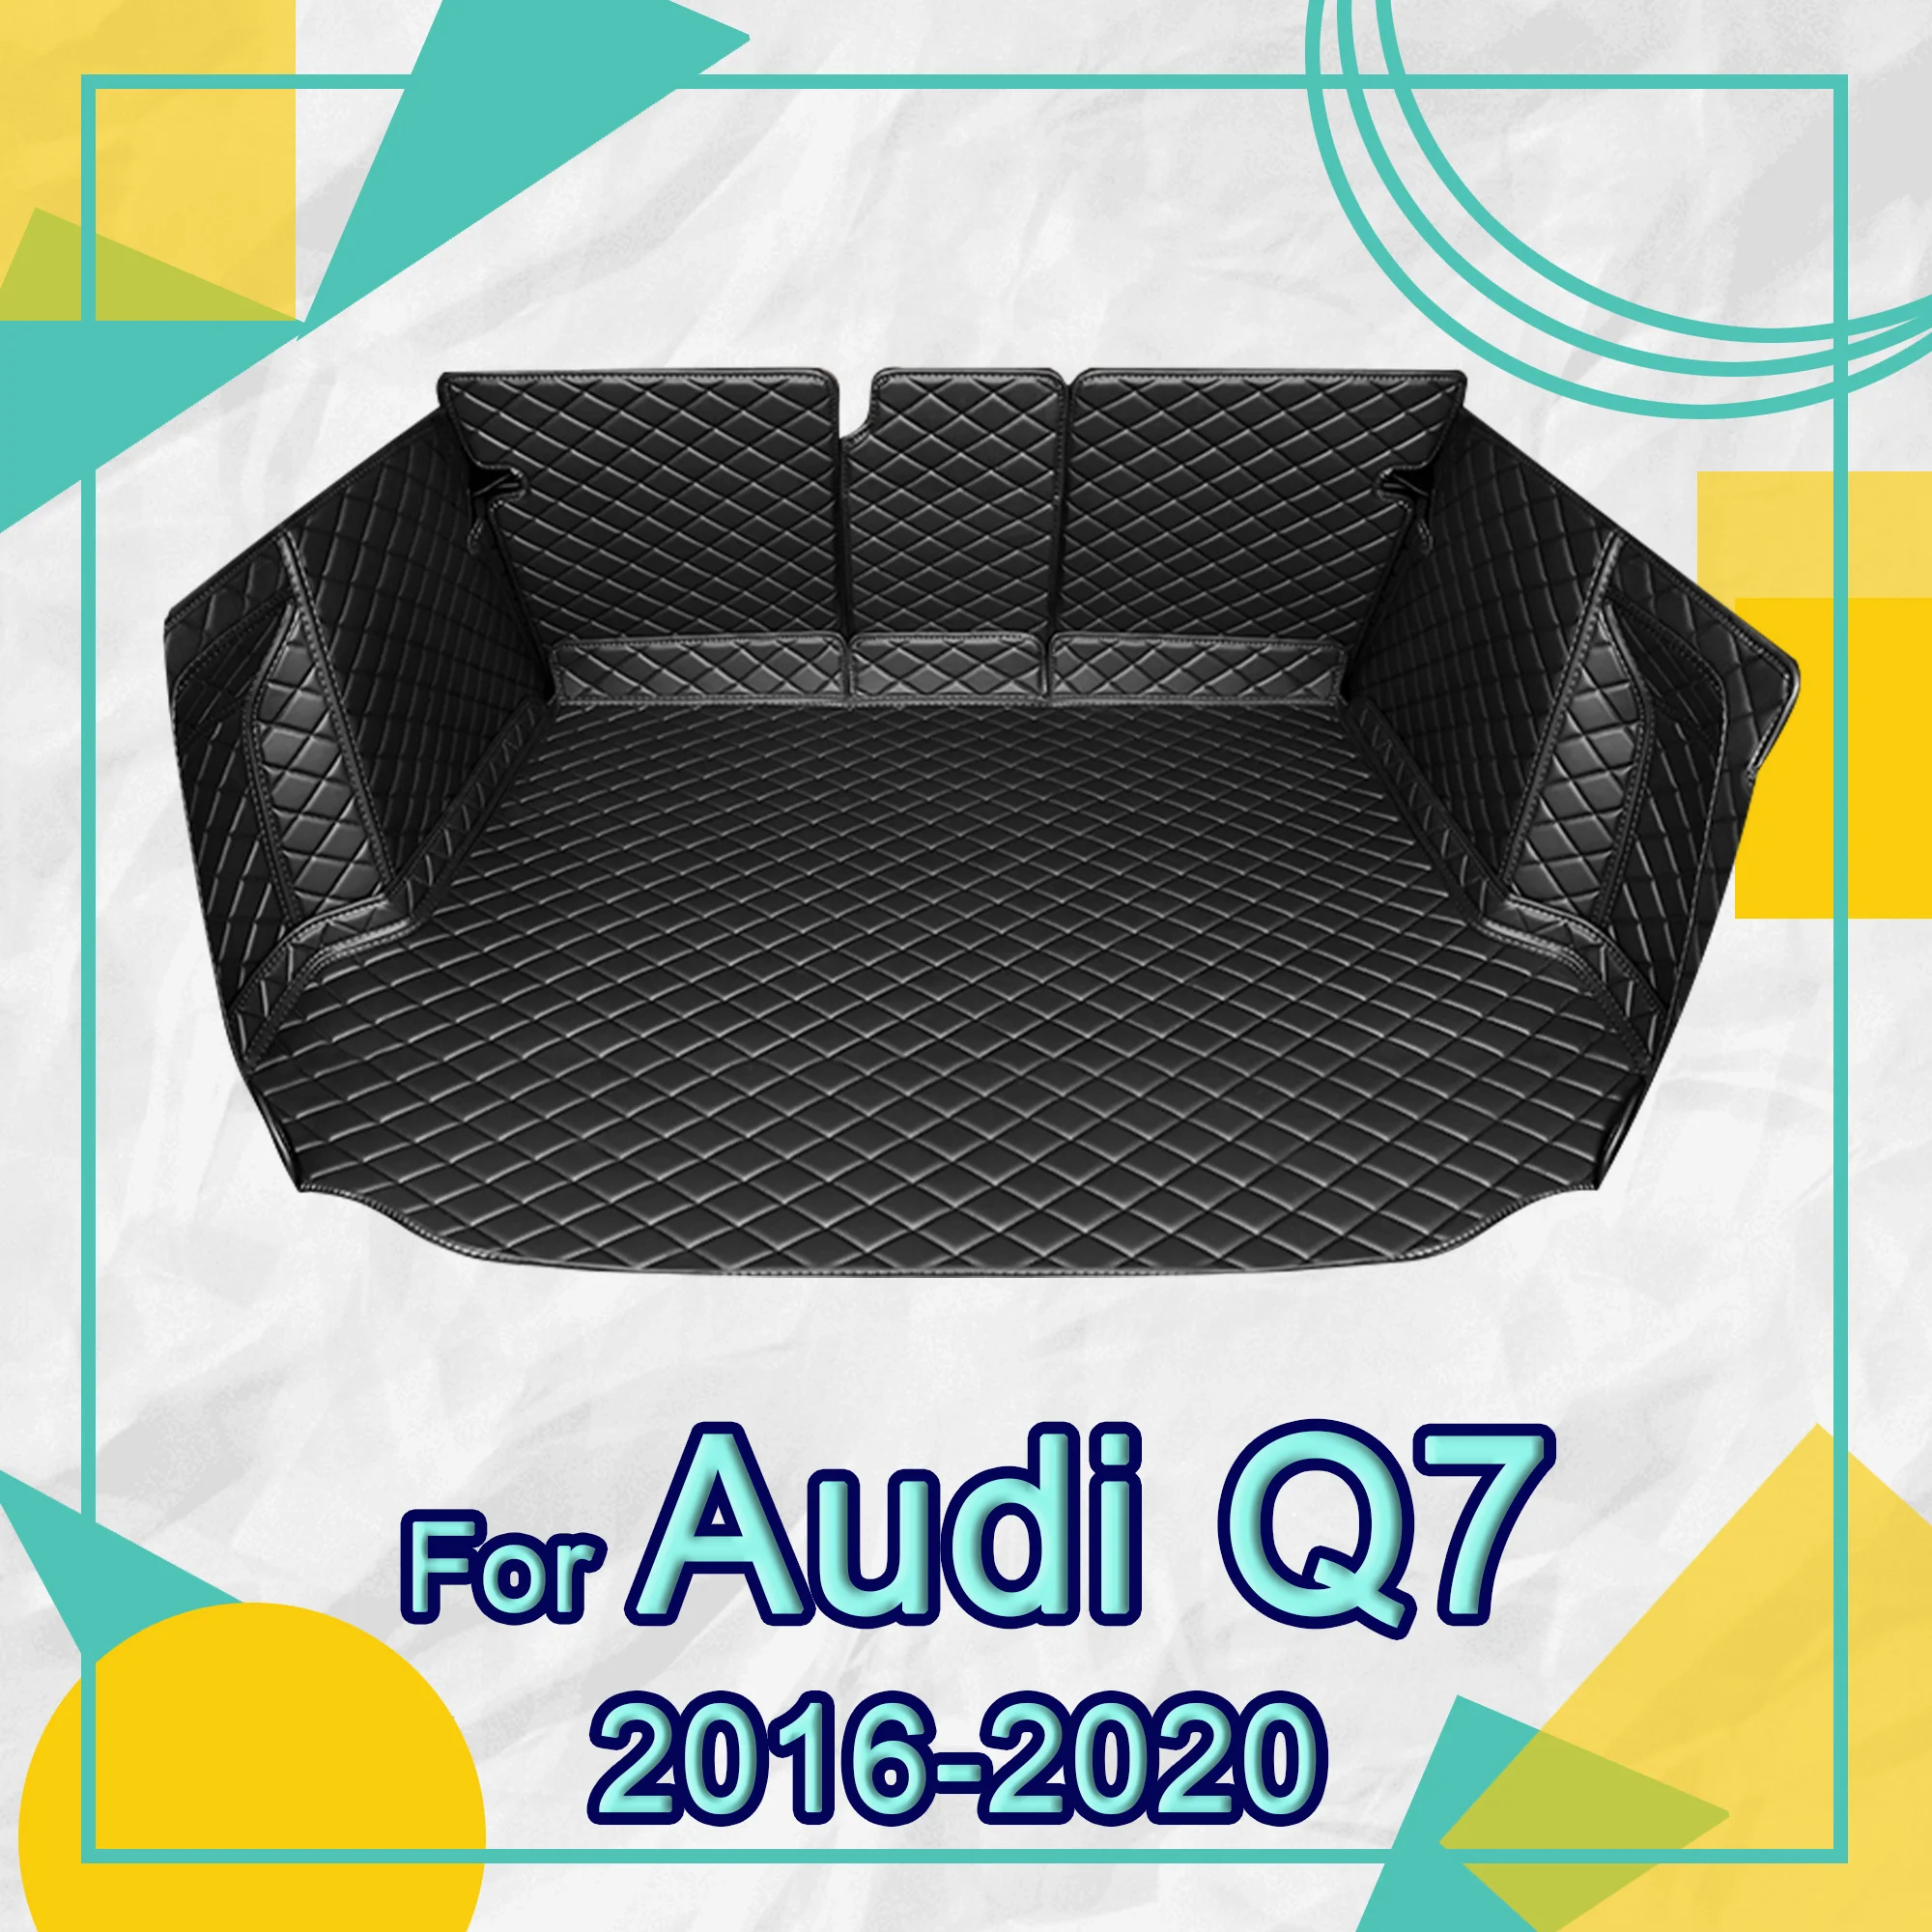 

Коврик для багажника автомобиля APPDEE для Audi Q7, семи сидений 2016, 2017, 2018, 2019, 2020, коврик для подкладки груза, аксессуары для интерьера